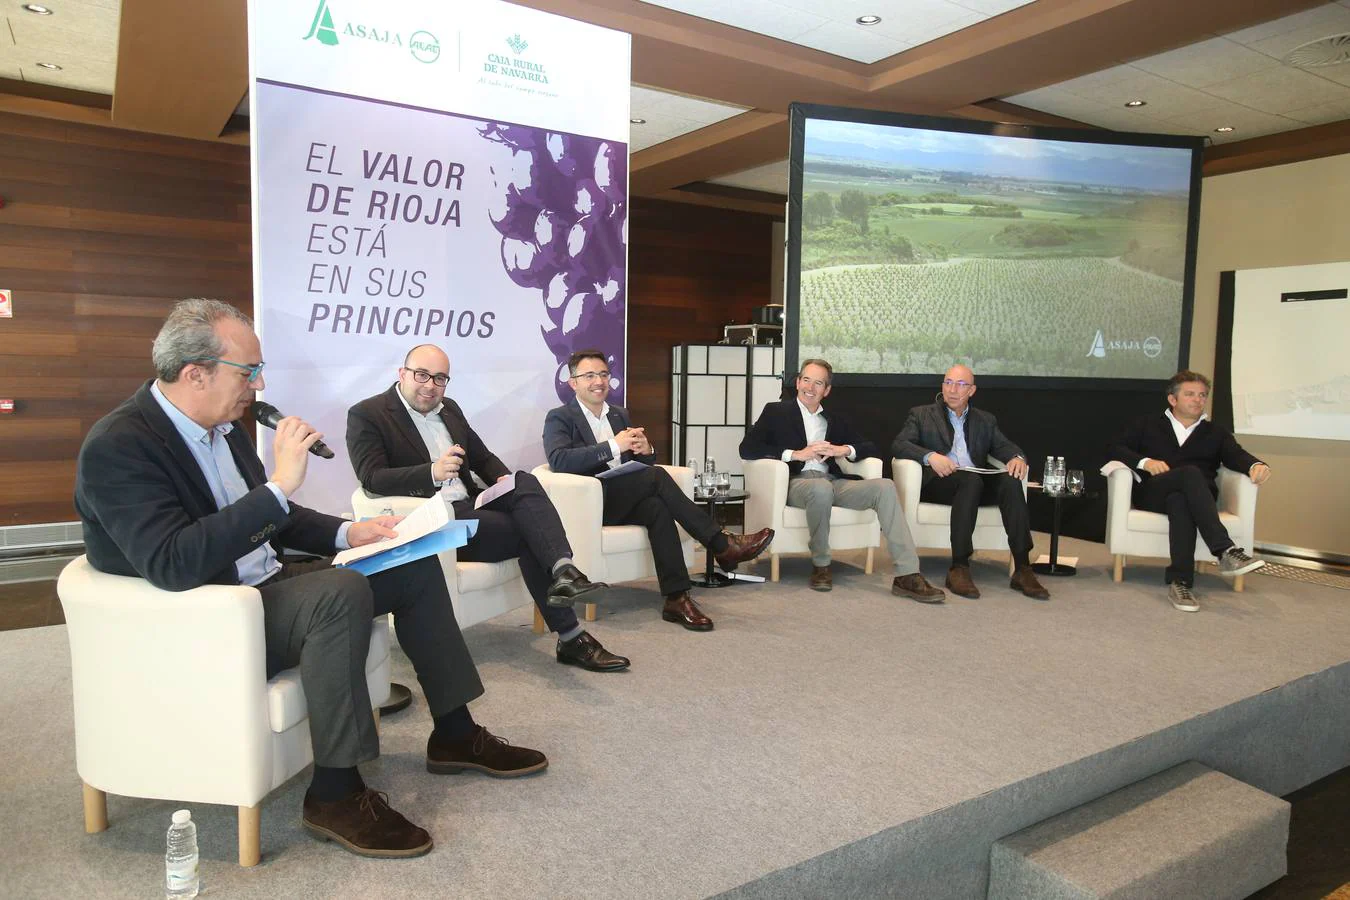 Jornada 'El valor del Rioja está en sus principios'